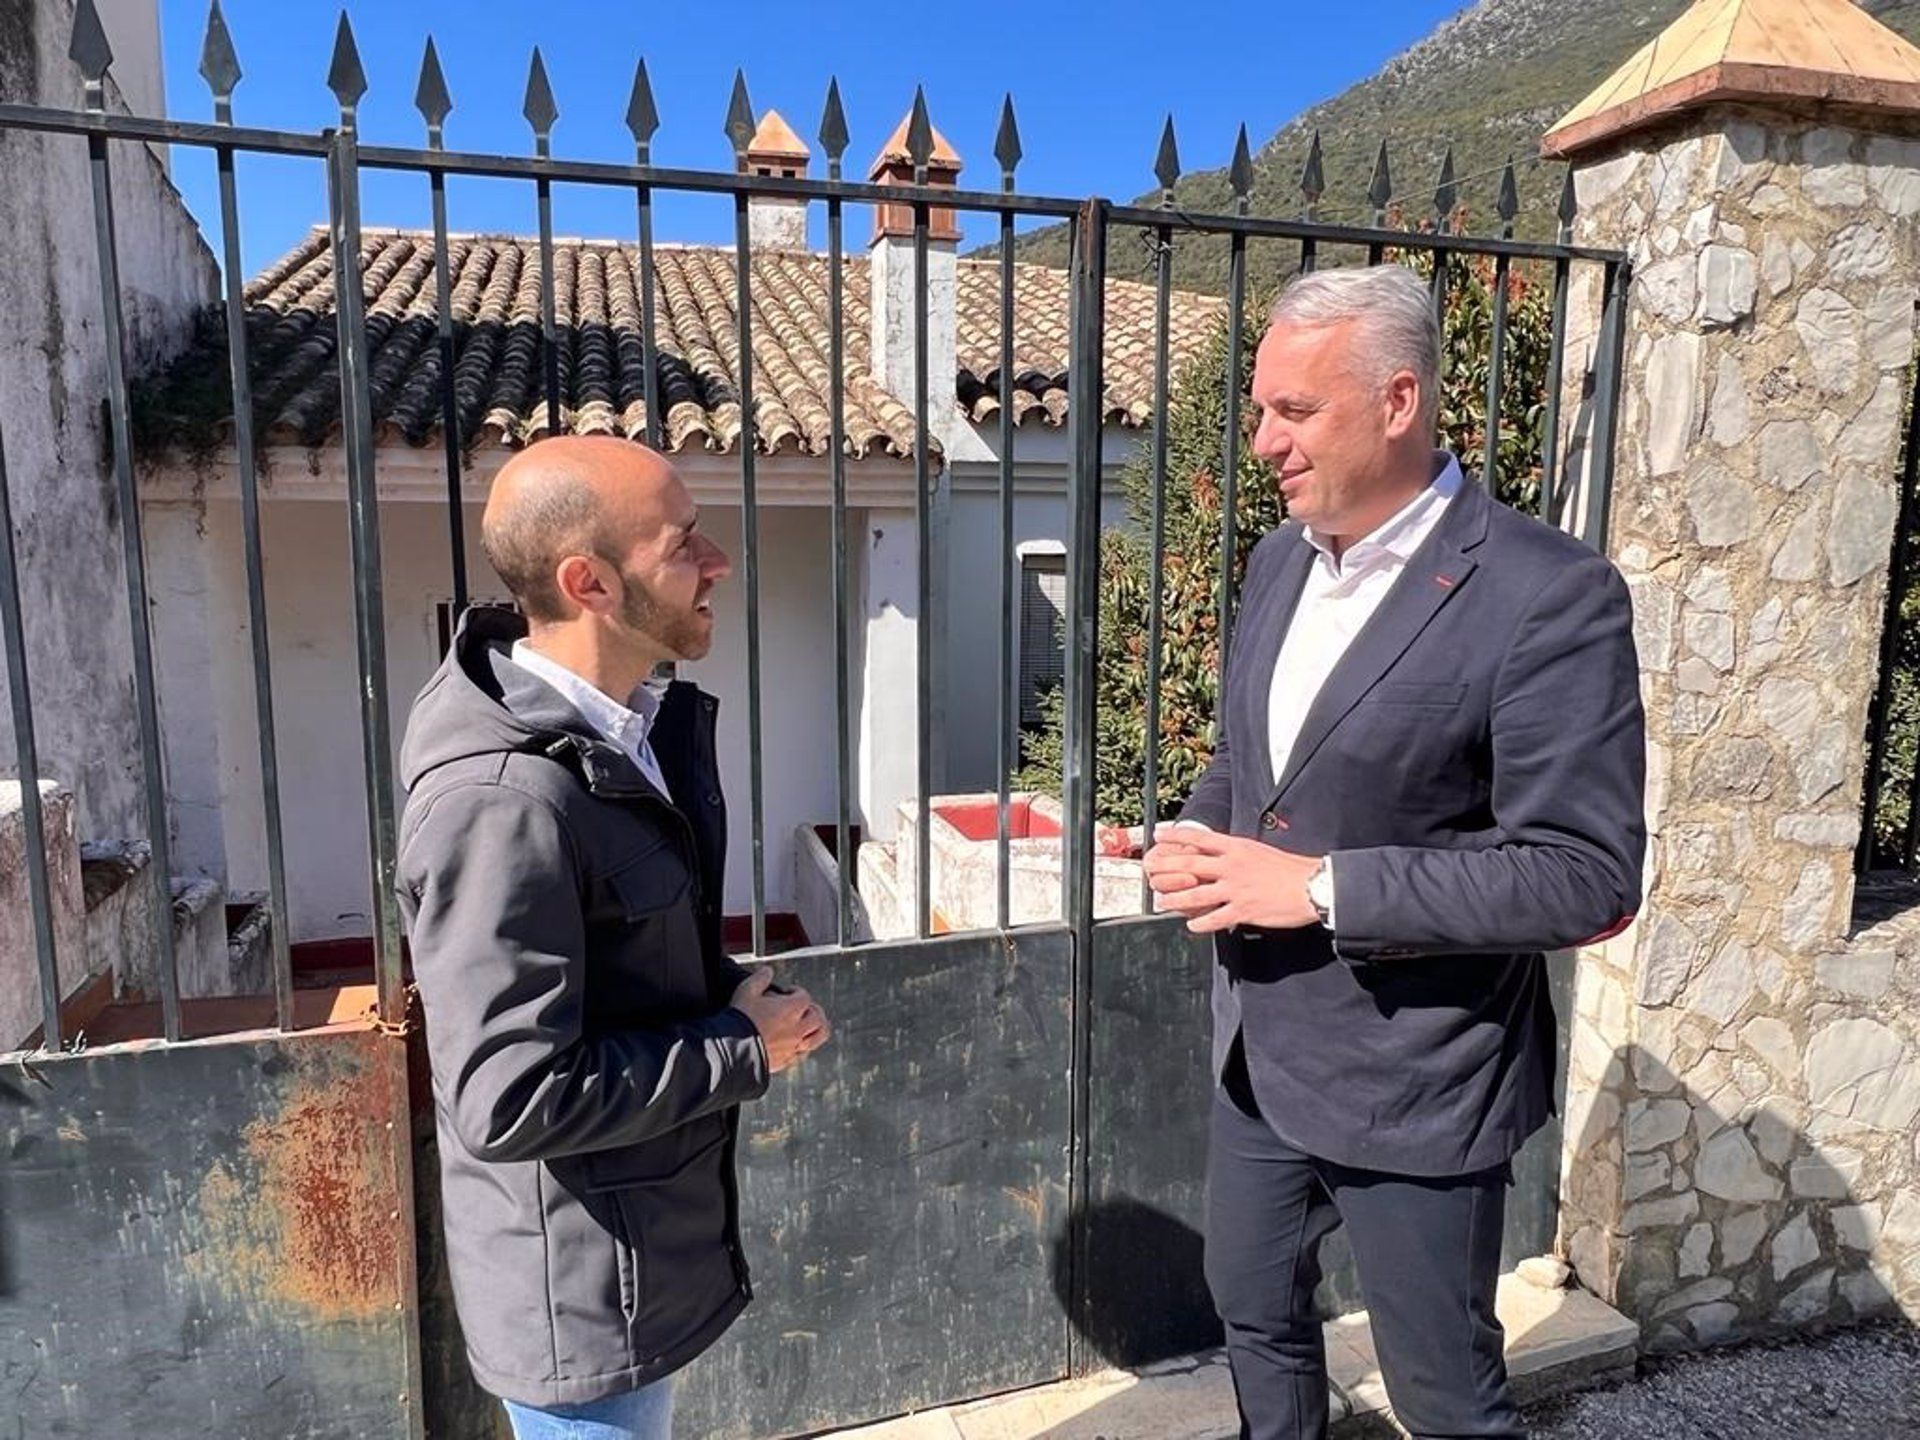 El presidente de la Diputación de Cádiz, Juan Carlos Ruiz Boix, ha confirmado al alcalde de Grazalema, Carlos García Ramírez, la inversión en el hotel de Benamahoma.